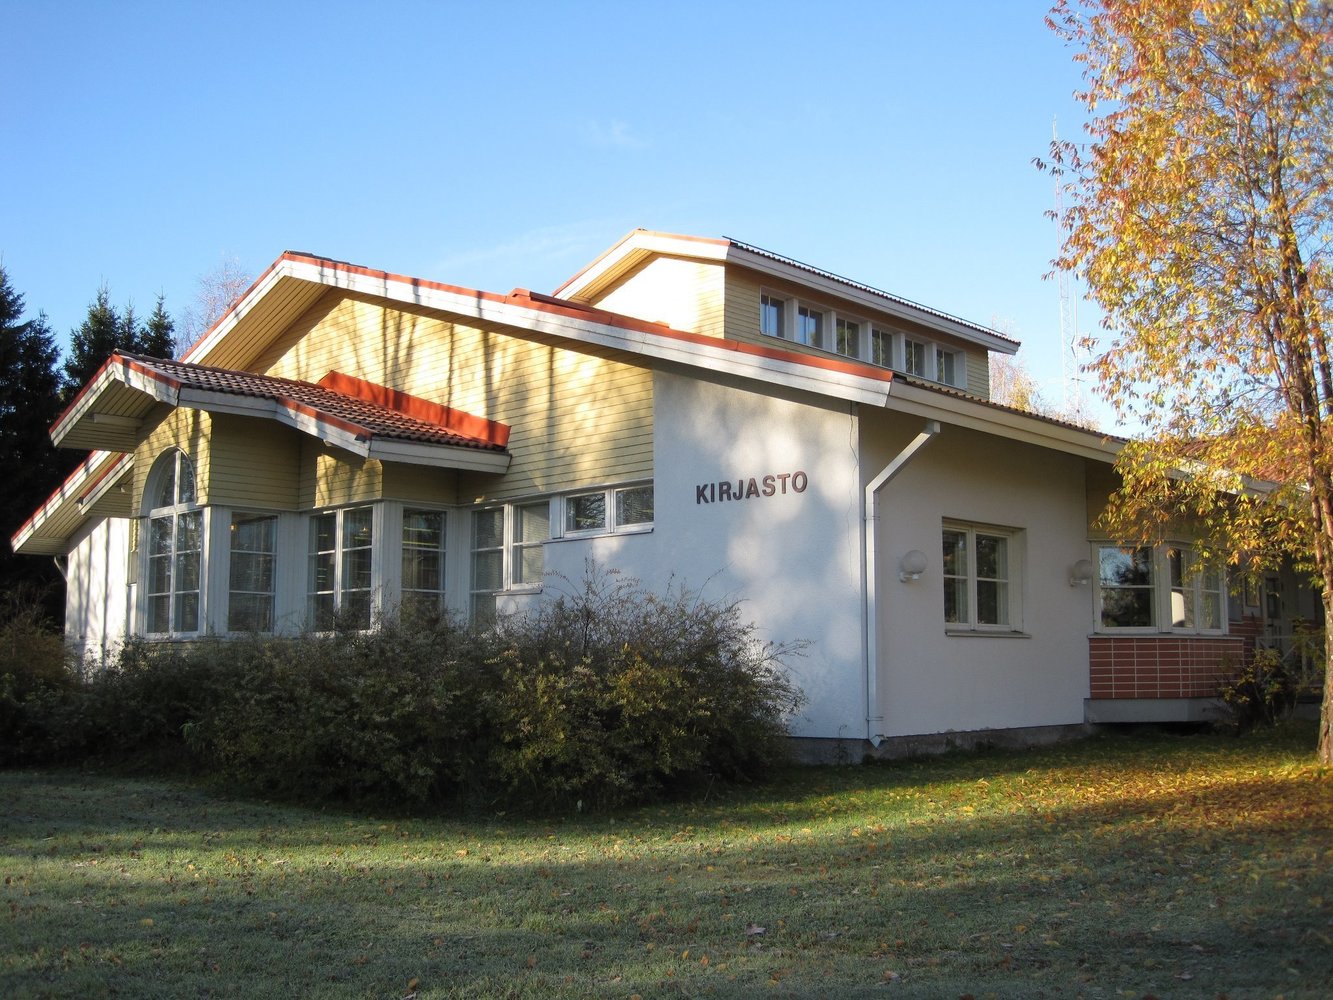 Utajärvi library